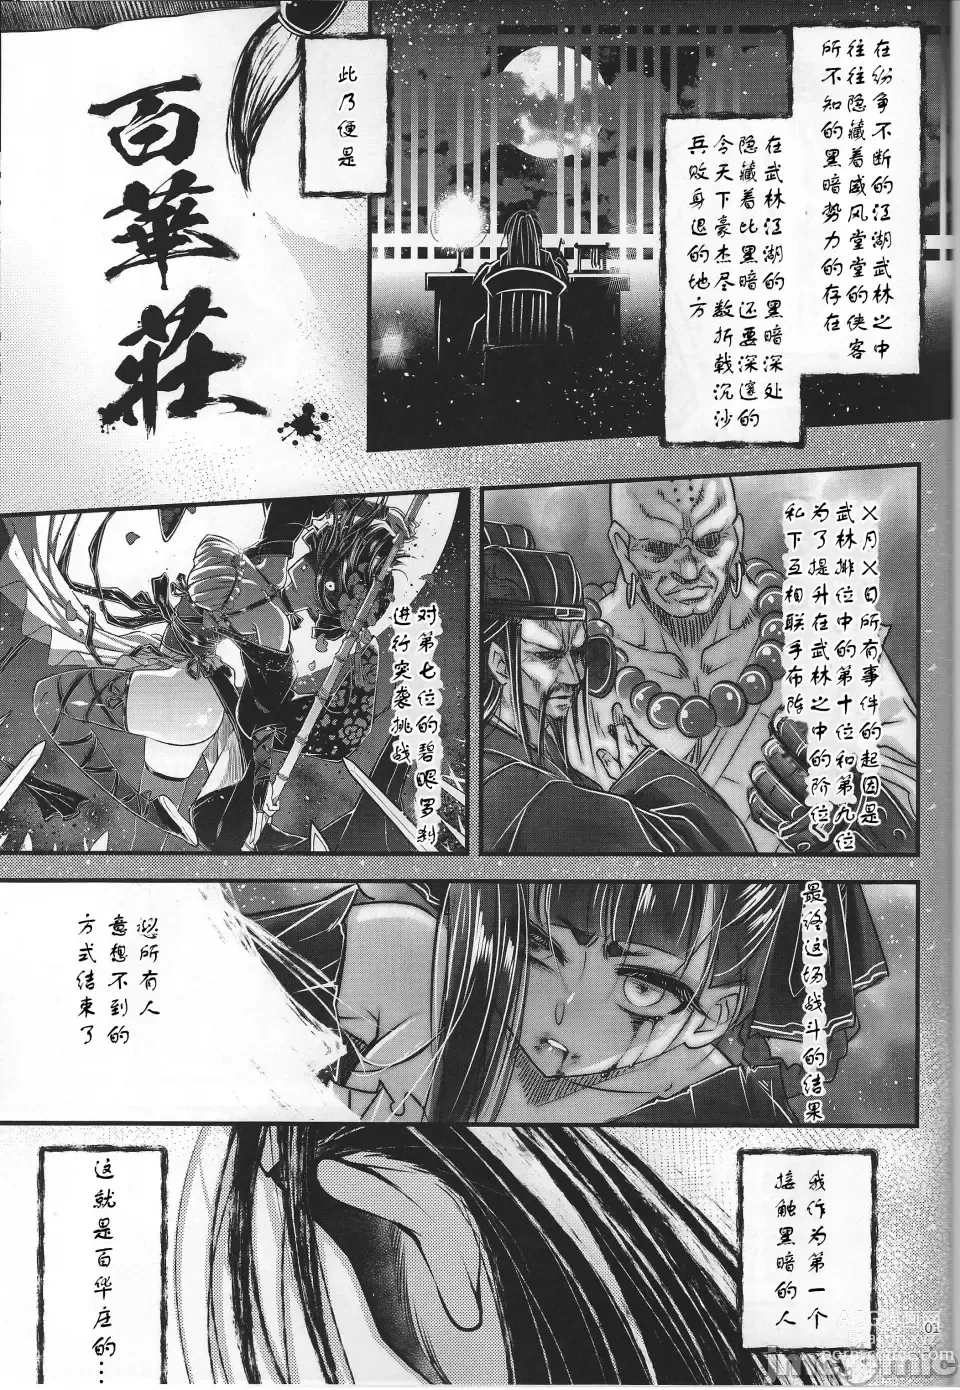 Page 2 of doujinshi Hyakkasou 12 <<Jitsuroku Makyou Hyakkasou Kikou>>